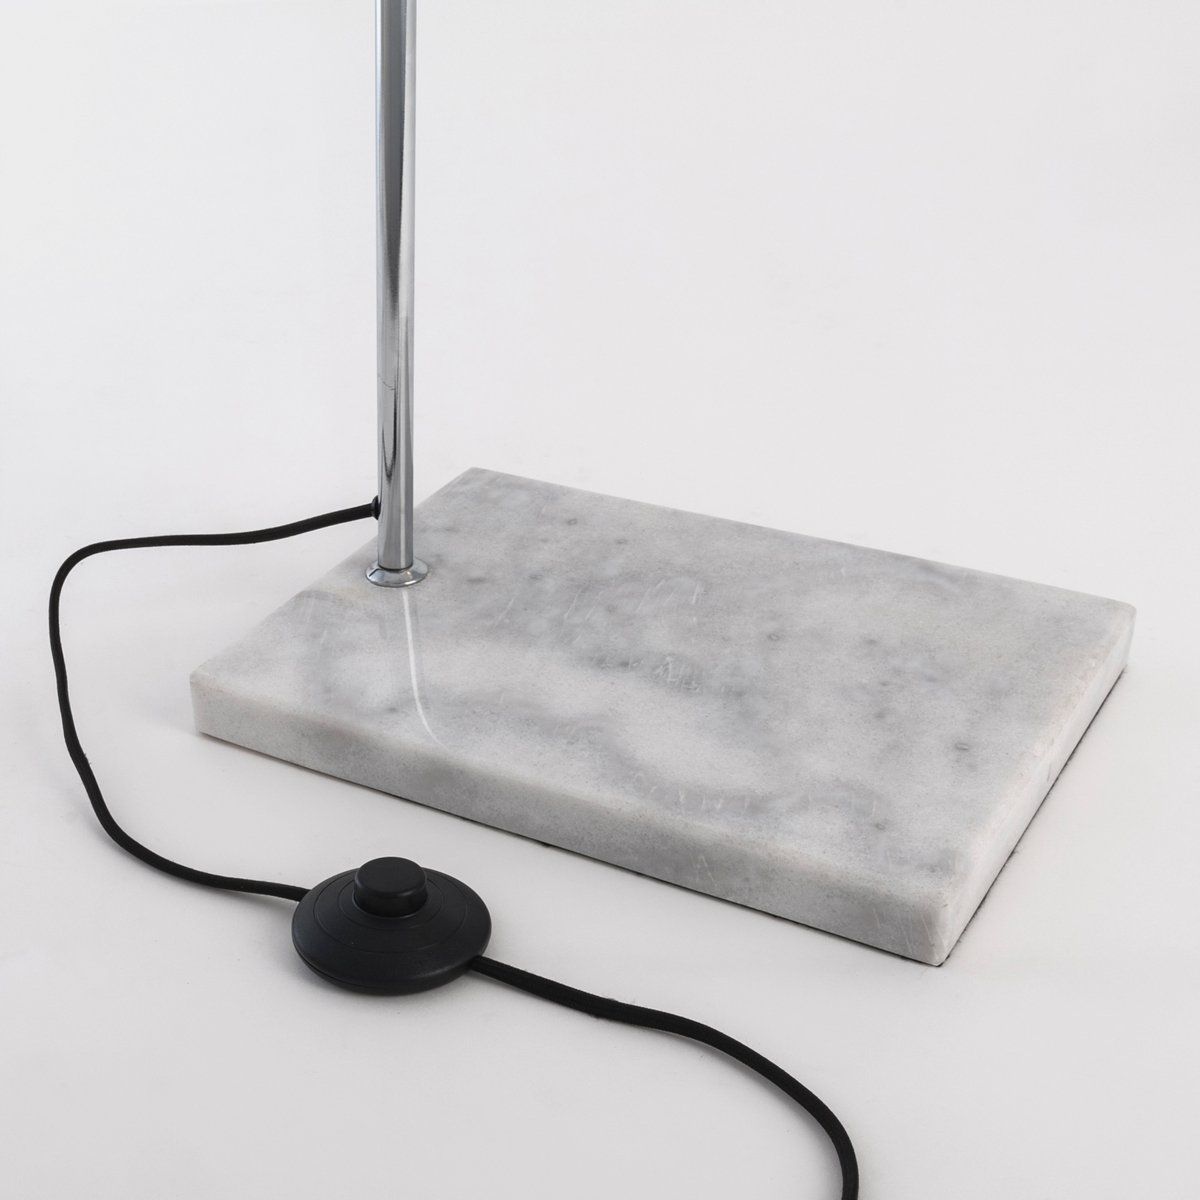 Lampadaire liseuse ART blanc mat en métal chromé et marbre blanc